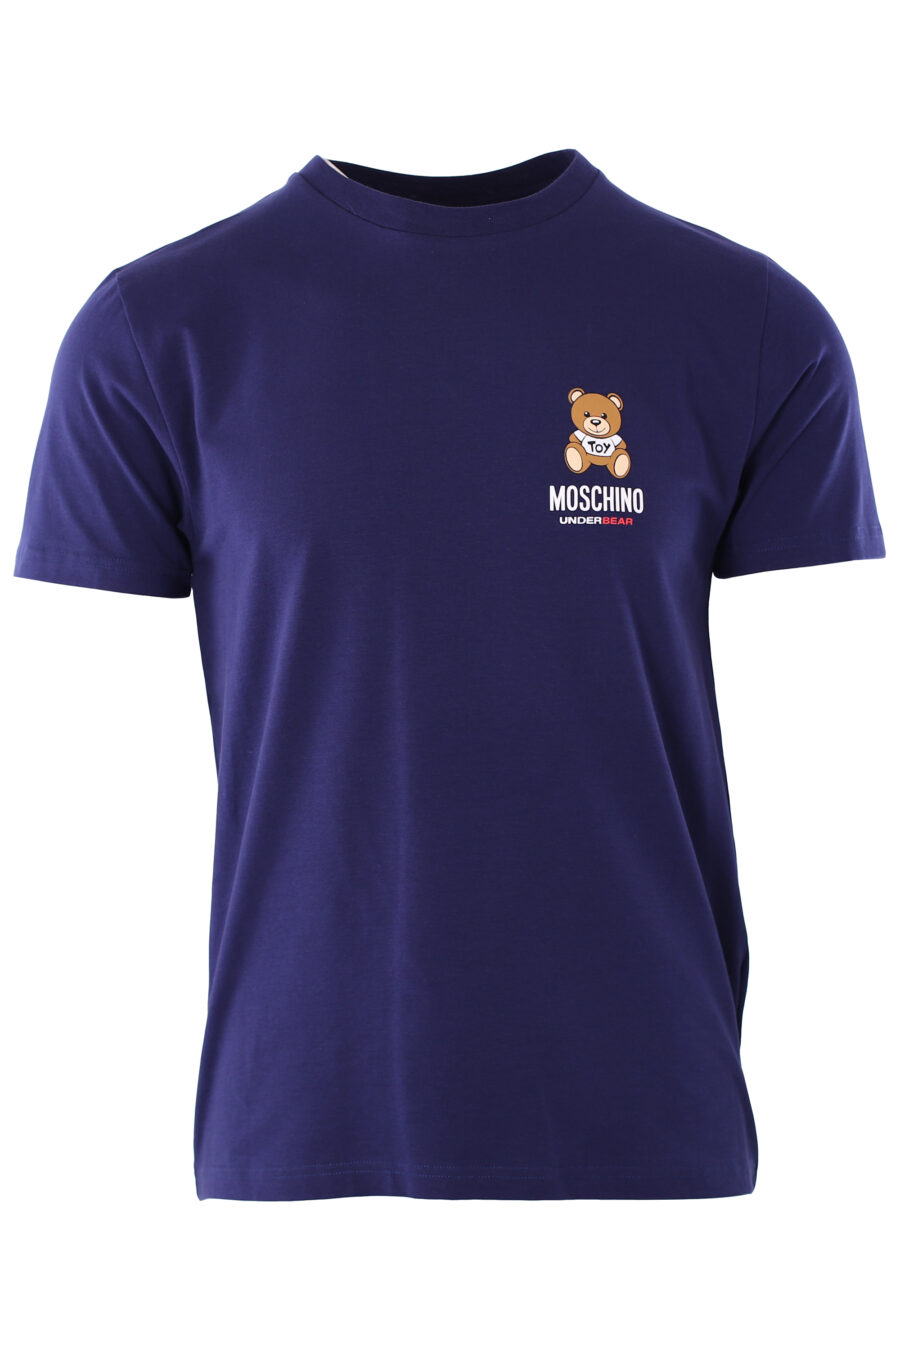 Camiseta azul con logo oso "underbear" - IMG 6595